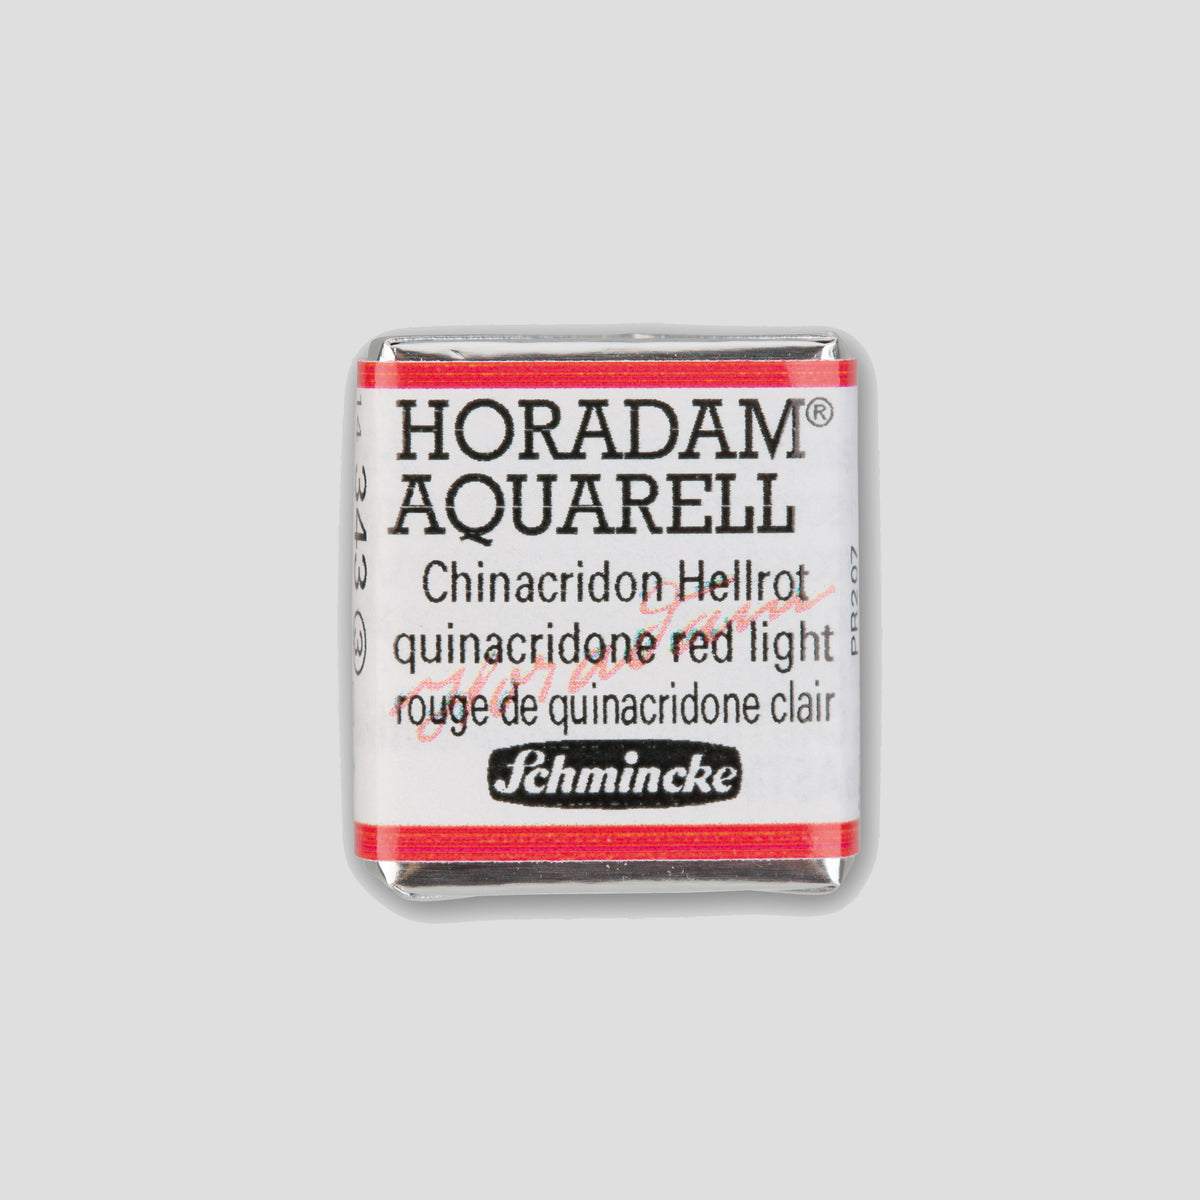 Schmincke Horadam® Half pan 343 Quinacridone red light 2